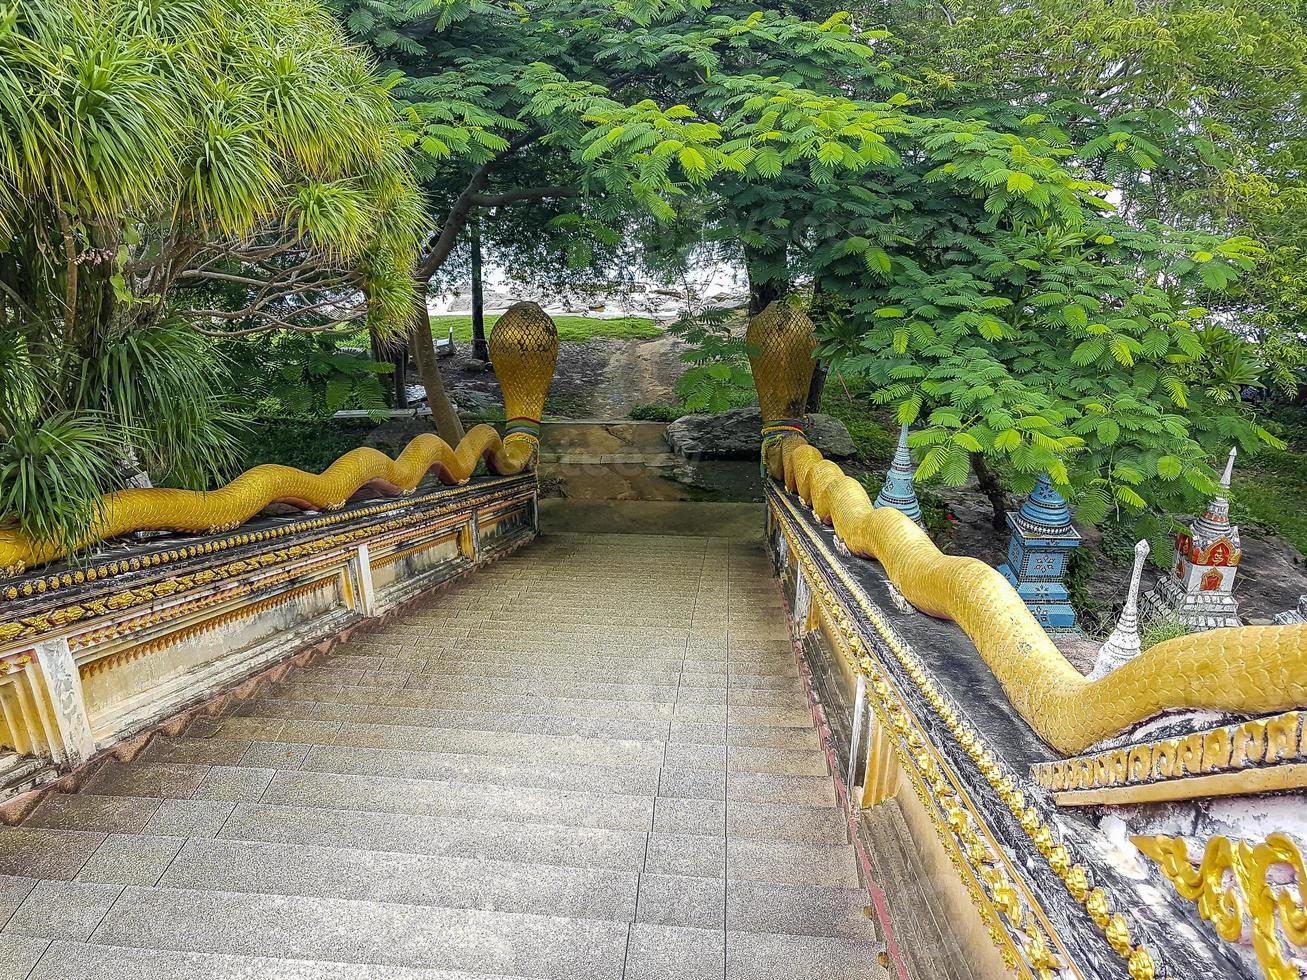 Treppen mit Schlangen, Wat Sila Ngu Tempel, Koh Samui Thailand. foto